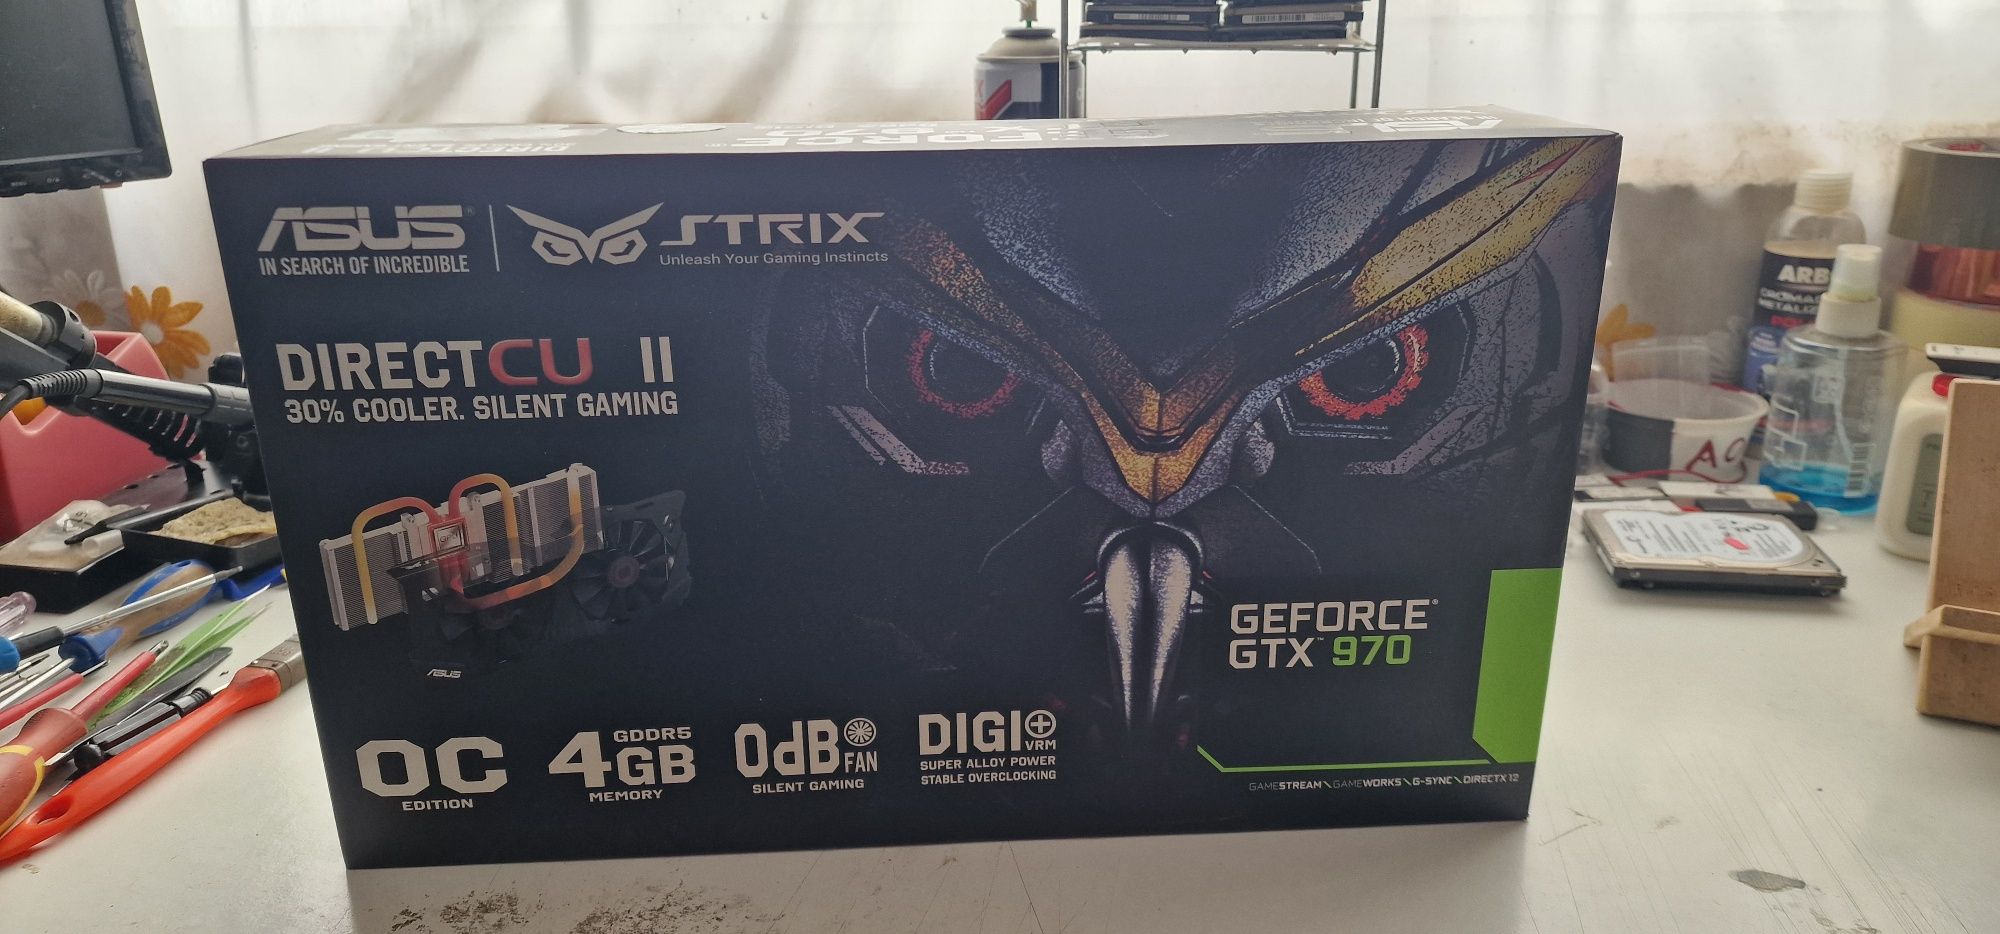 ASUS Rog Strix Geforce GTX 970 4GB